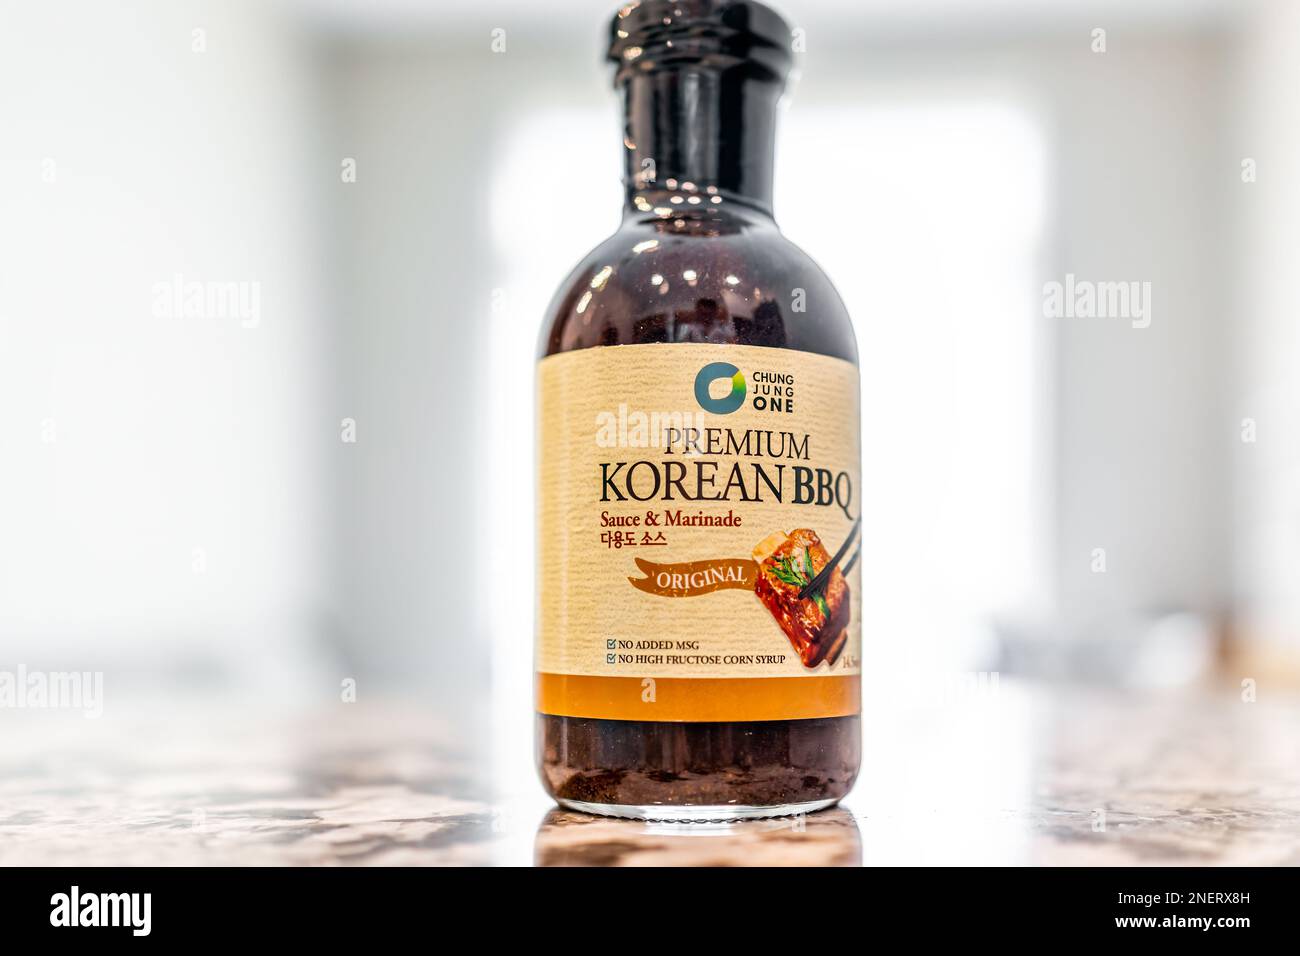 Avon, USA - 17. Juni 2022: Abschluss einer originalen Koreanischen Barbecue-Barbecue-Sauce-Glasflasche von Chung Jung One ohne Nachricht oder Maissirup Stockfoto